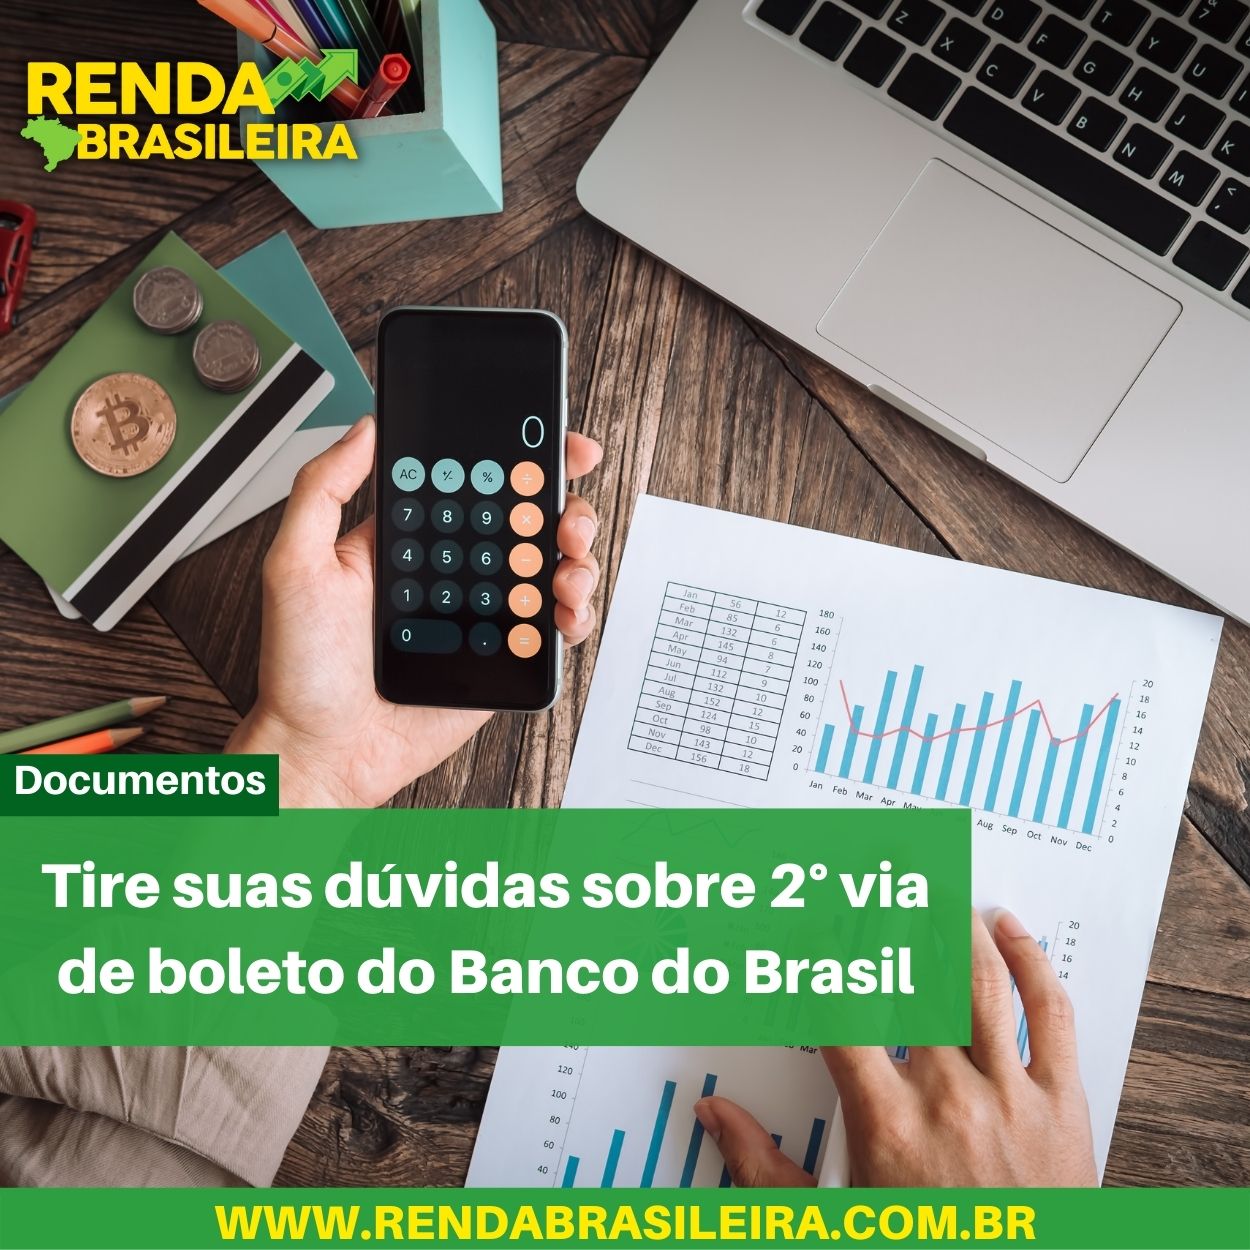 Tire suas dúvidas sobre 2° via de boleto do Banco do Brasil